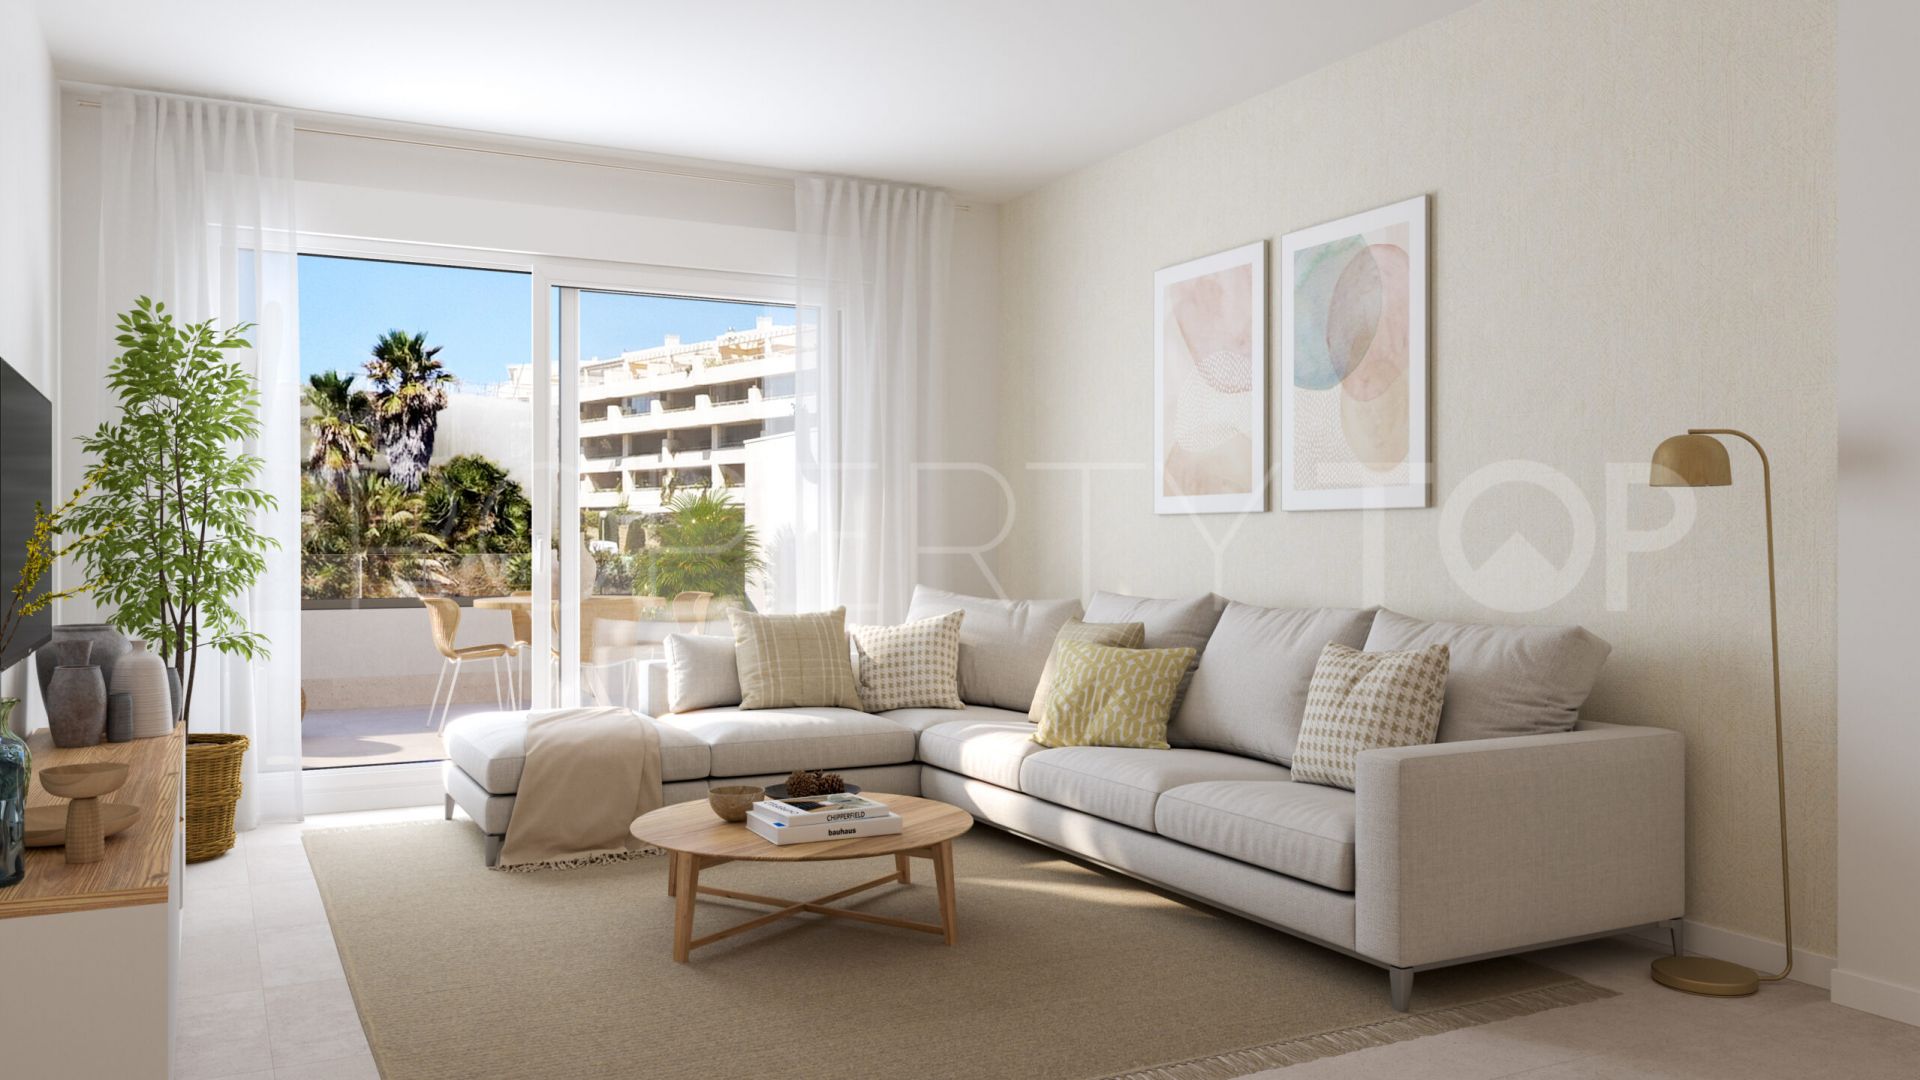 Ground floor apartment with 3 bedrooms for sale in Cala de Mijas